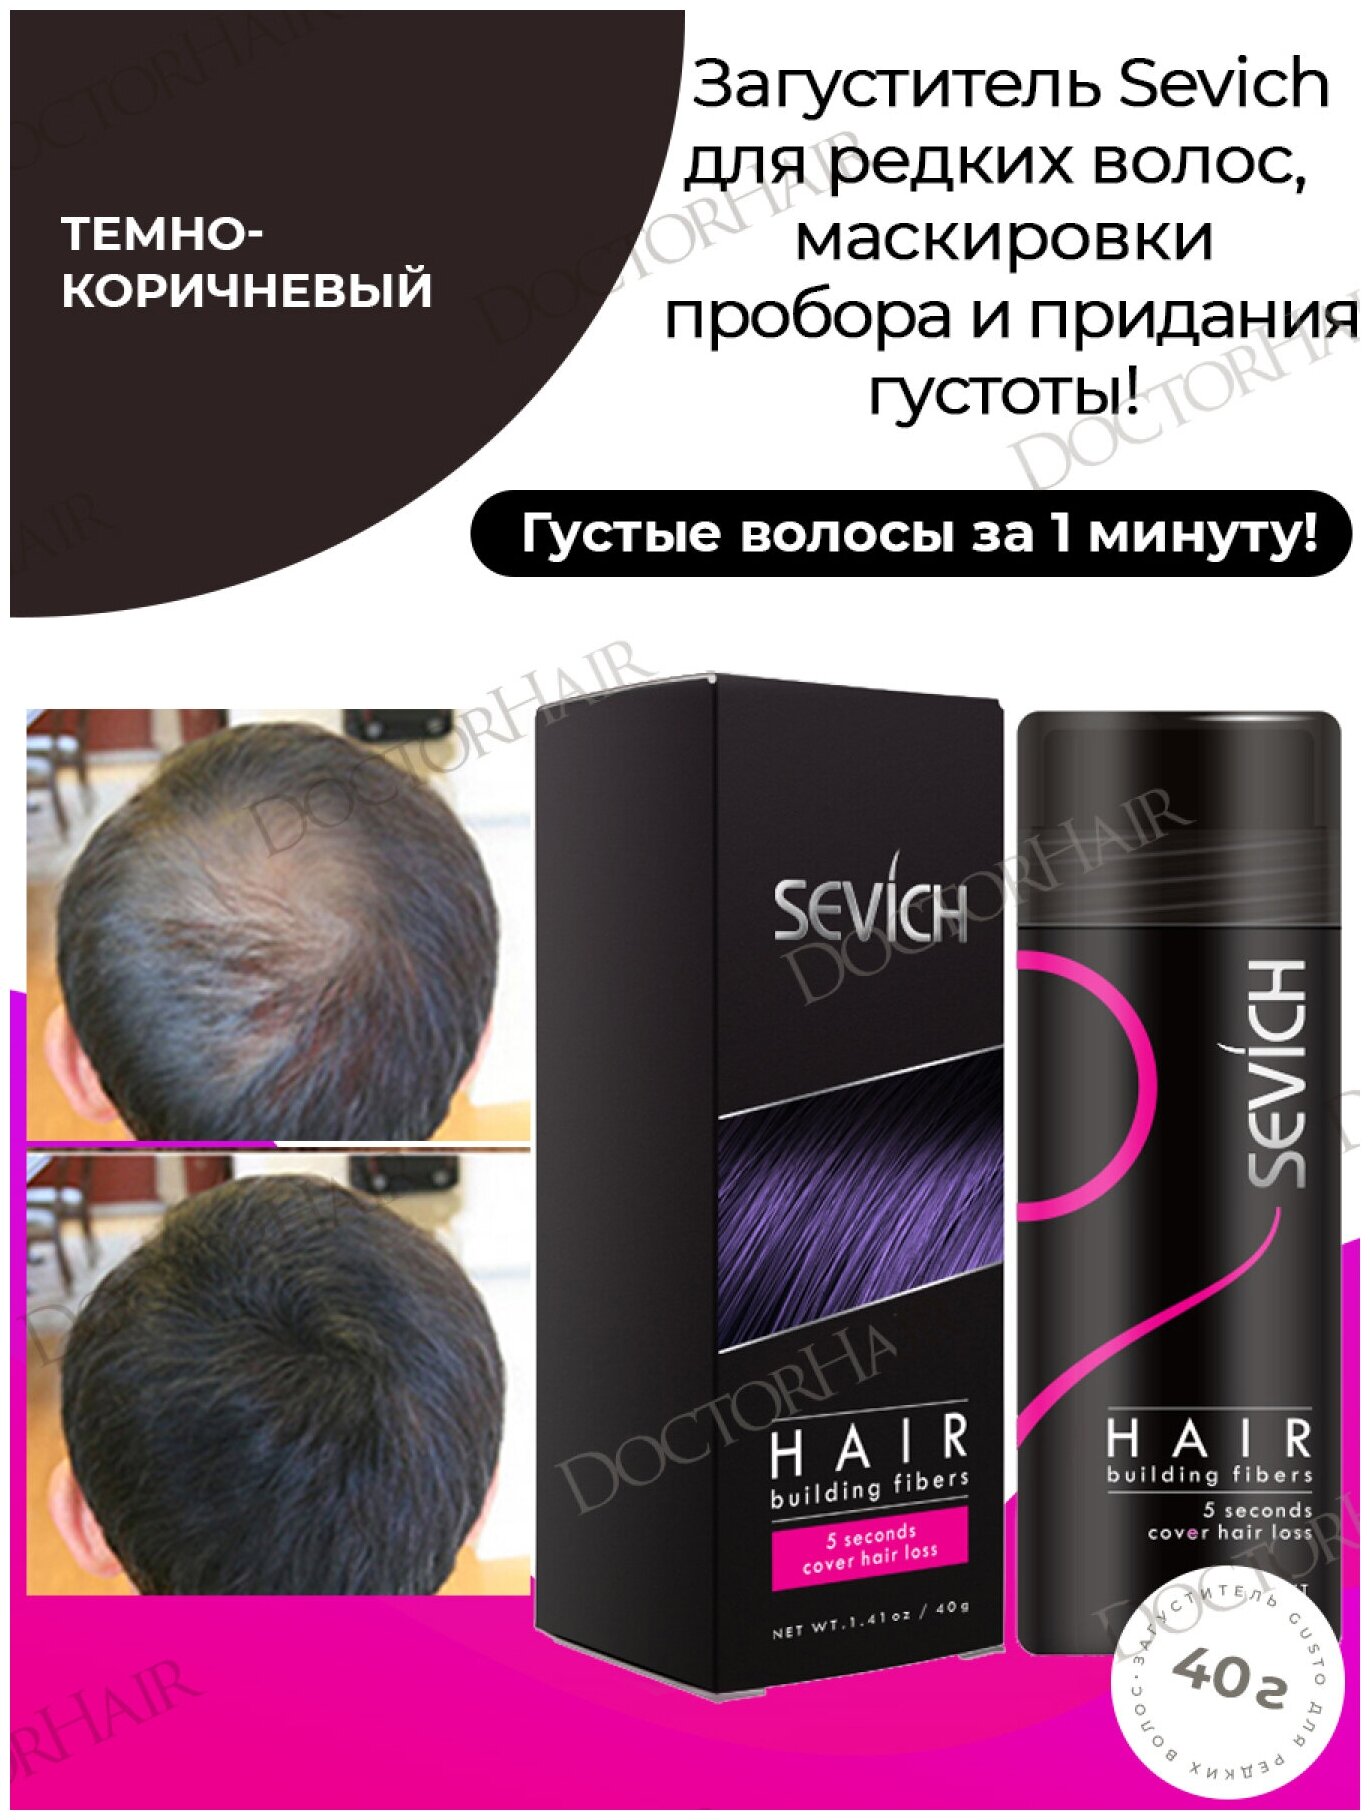 Sevich / Севич Средство загуститель для волос, сухая пудра камуфляж выпадения и седины, темно-коричневый (dark brown), 40 мл, 40 г